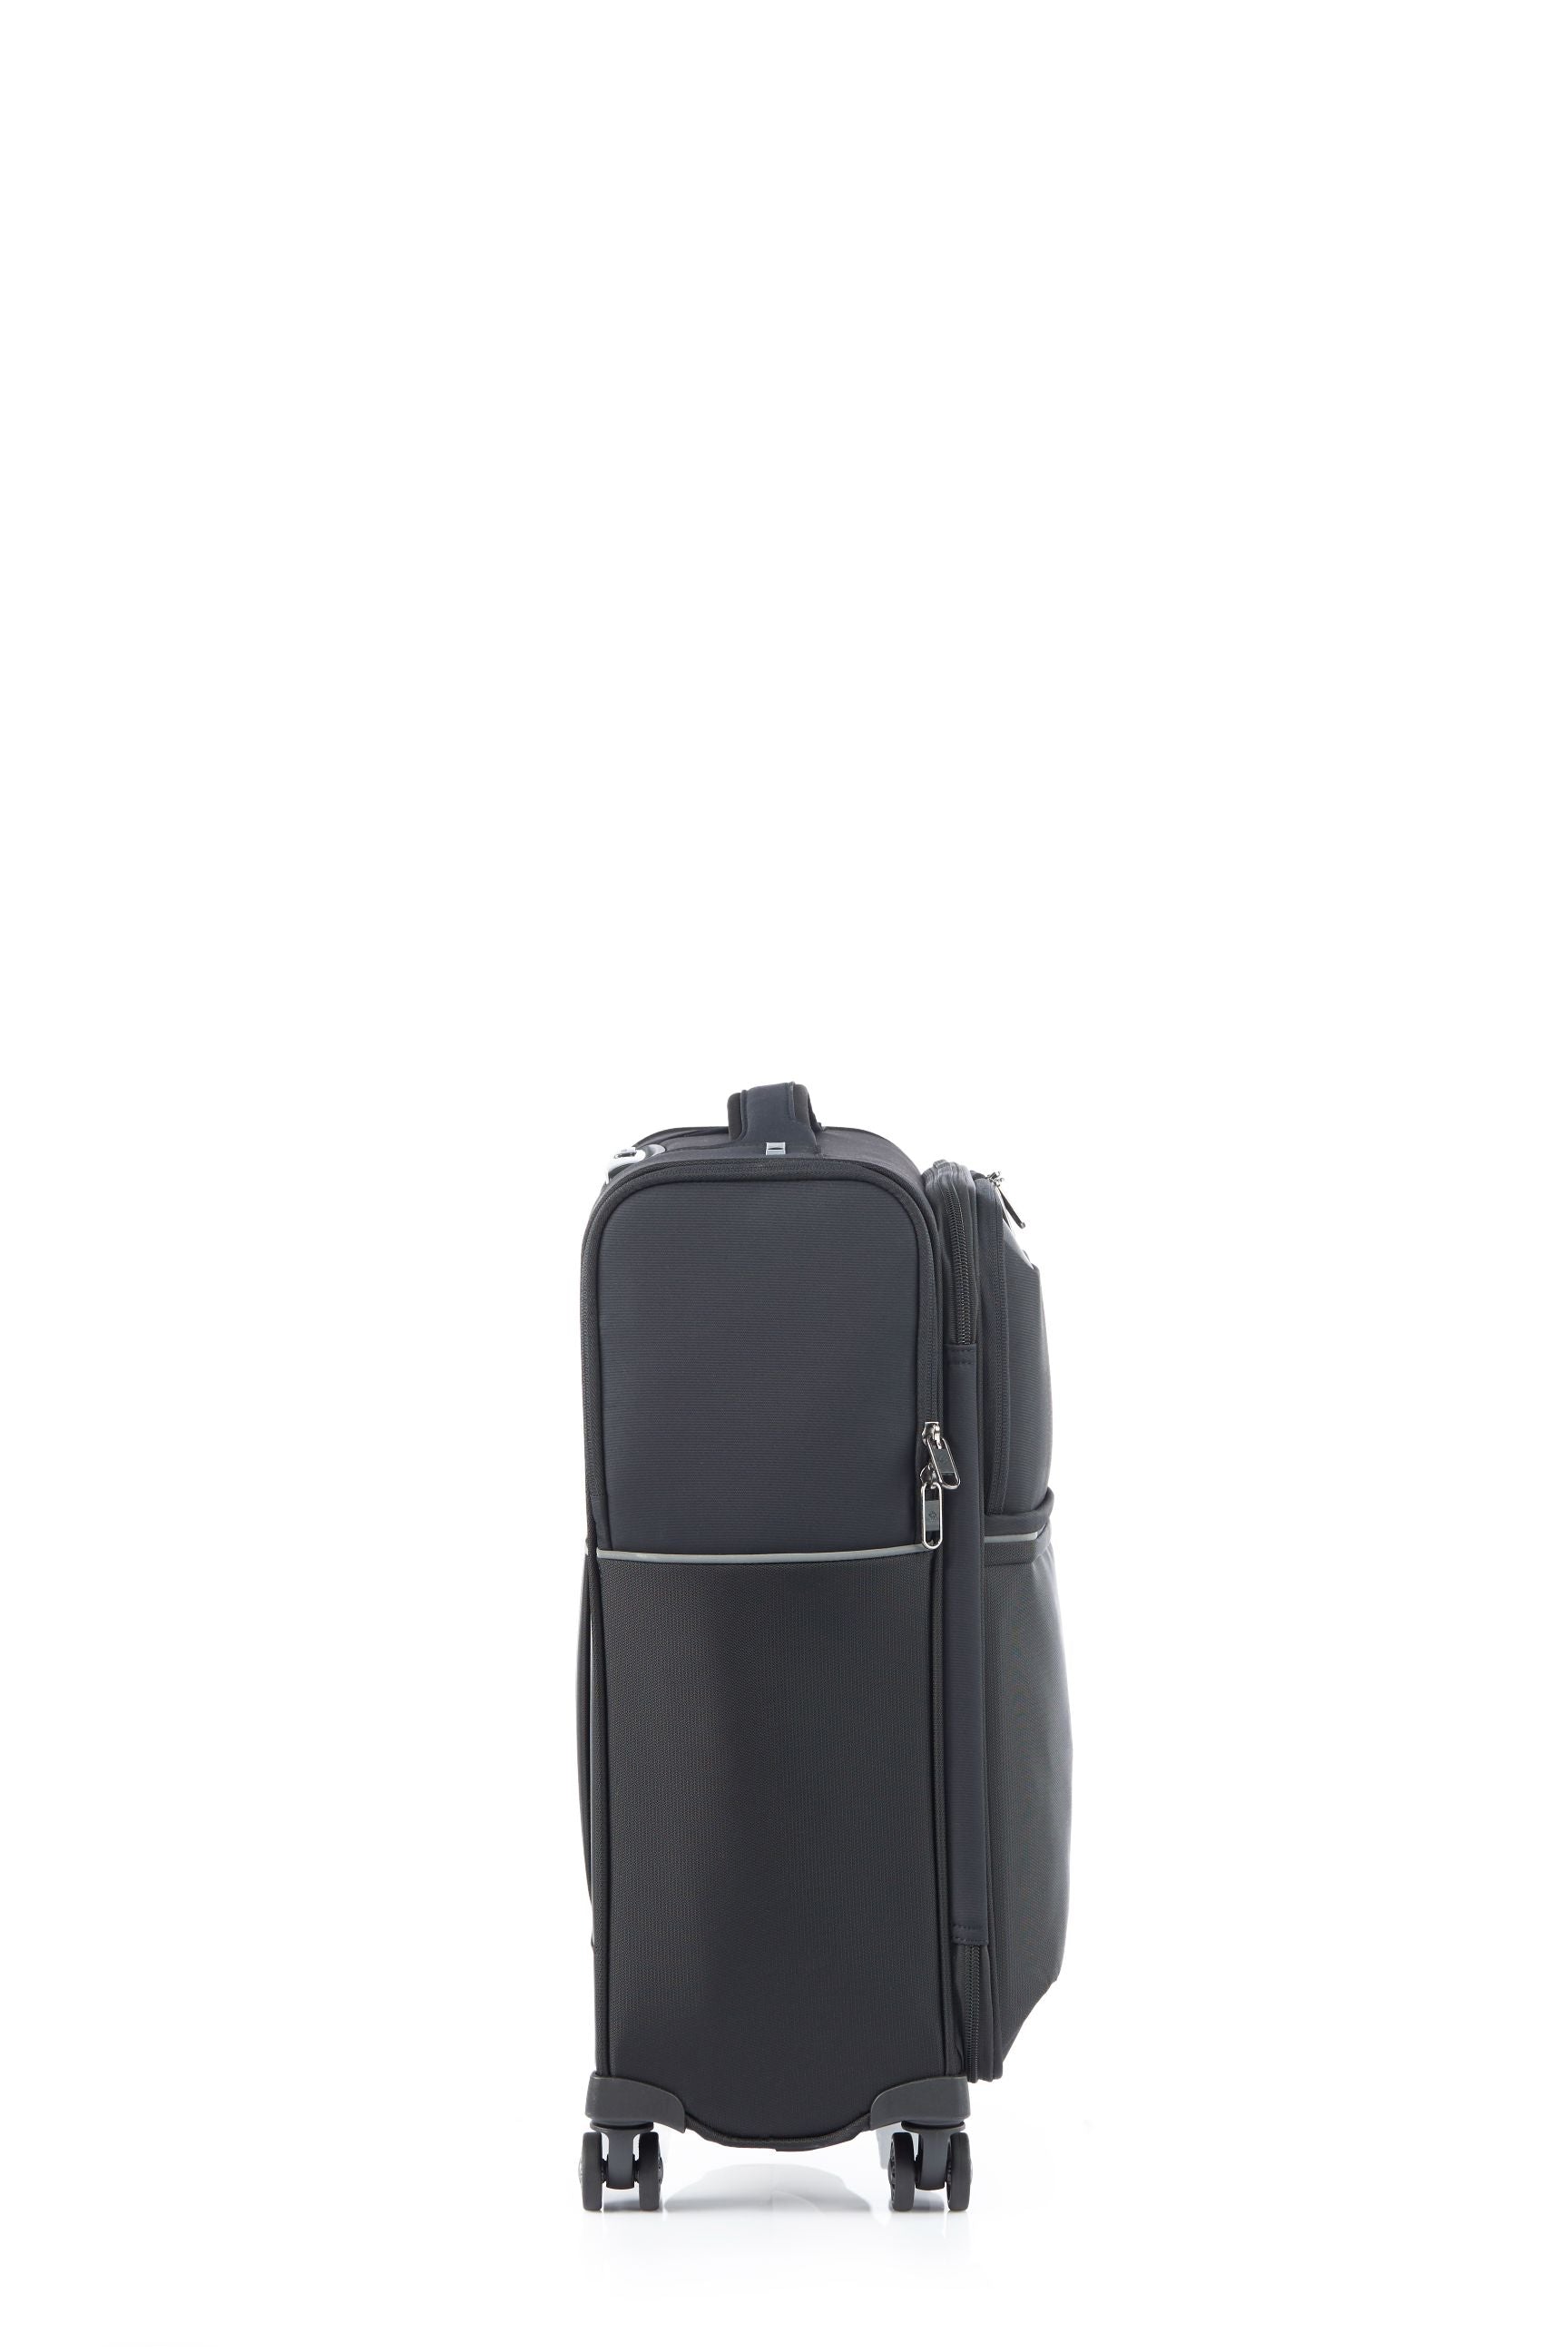 Samsonite - 73HR 55cm Small Suitcase - Black-13